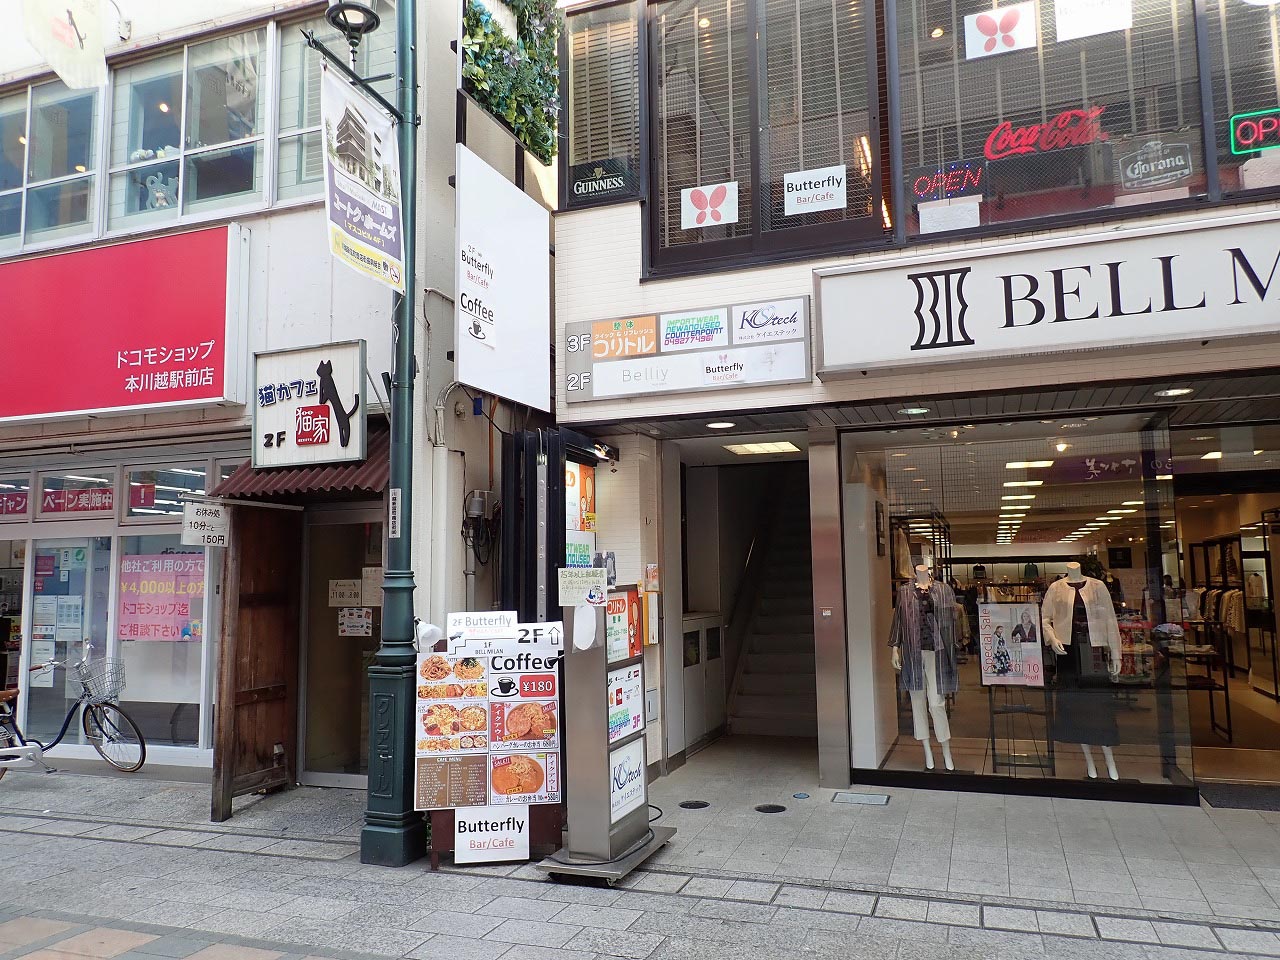 『ベルミラン・川越店』の2階にある淡路島カレーが食べられるお店『バタフライ』